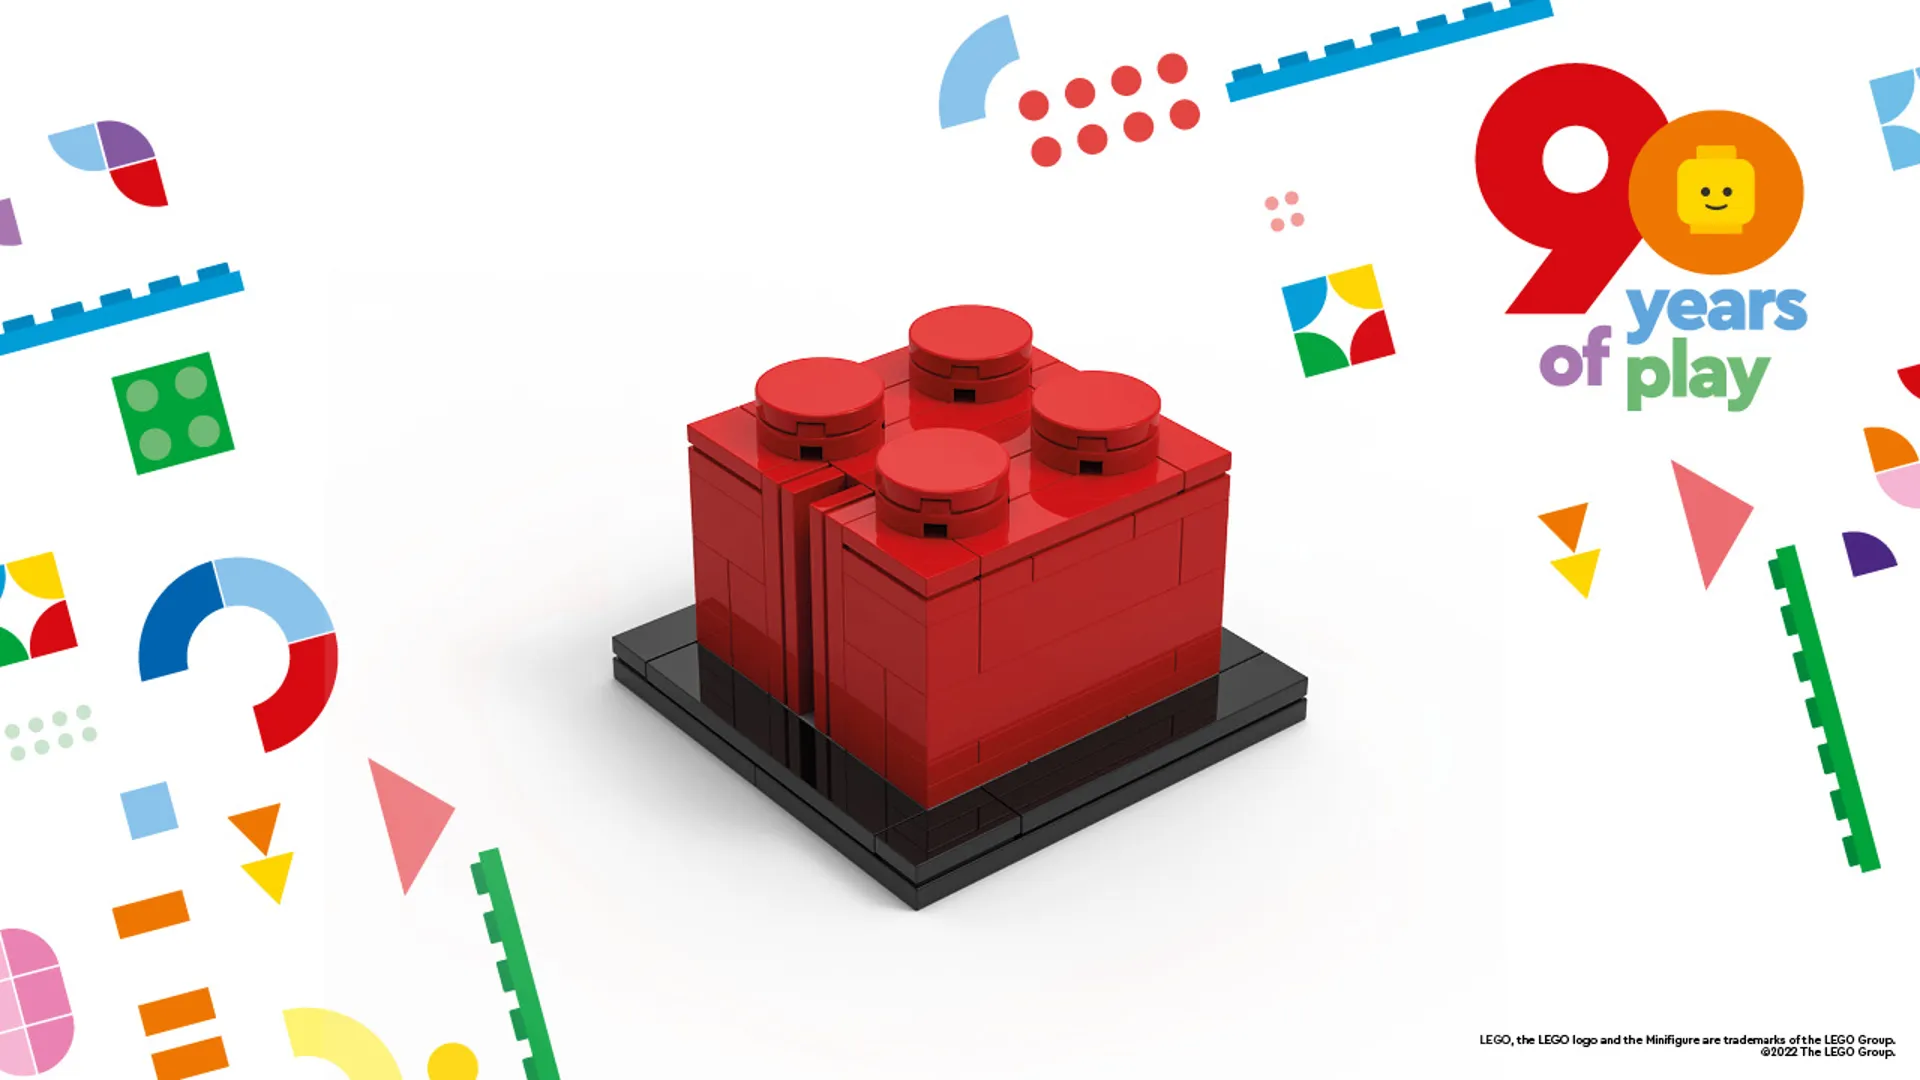 Legoland Lego So Many Ways To Play promotional Brick x1 